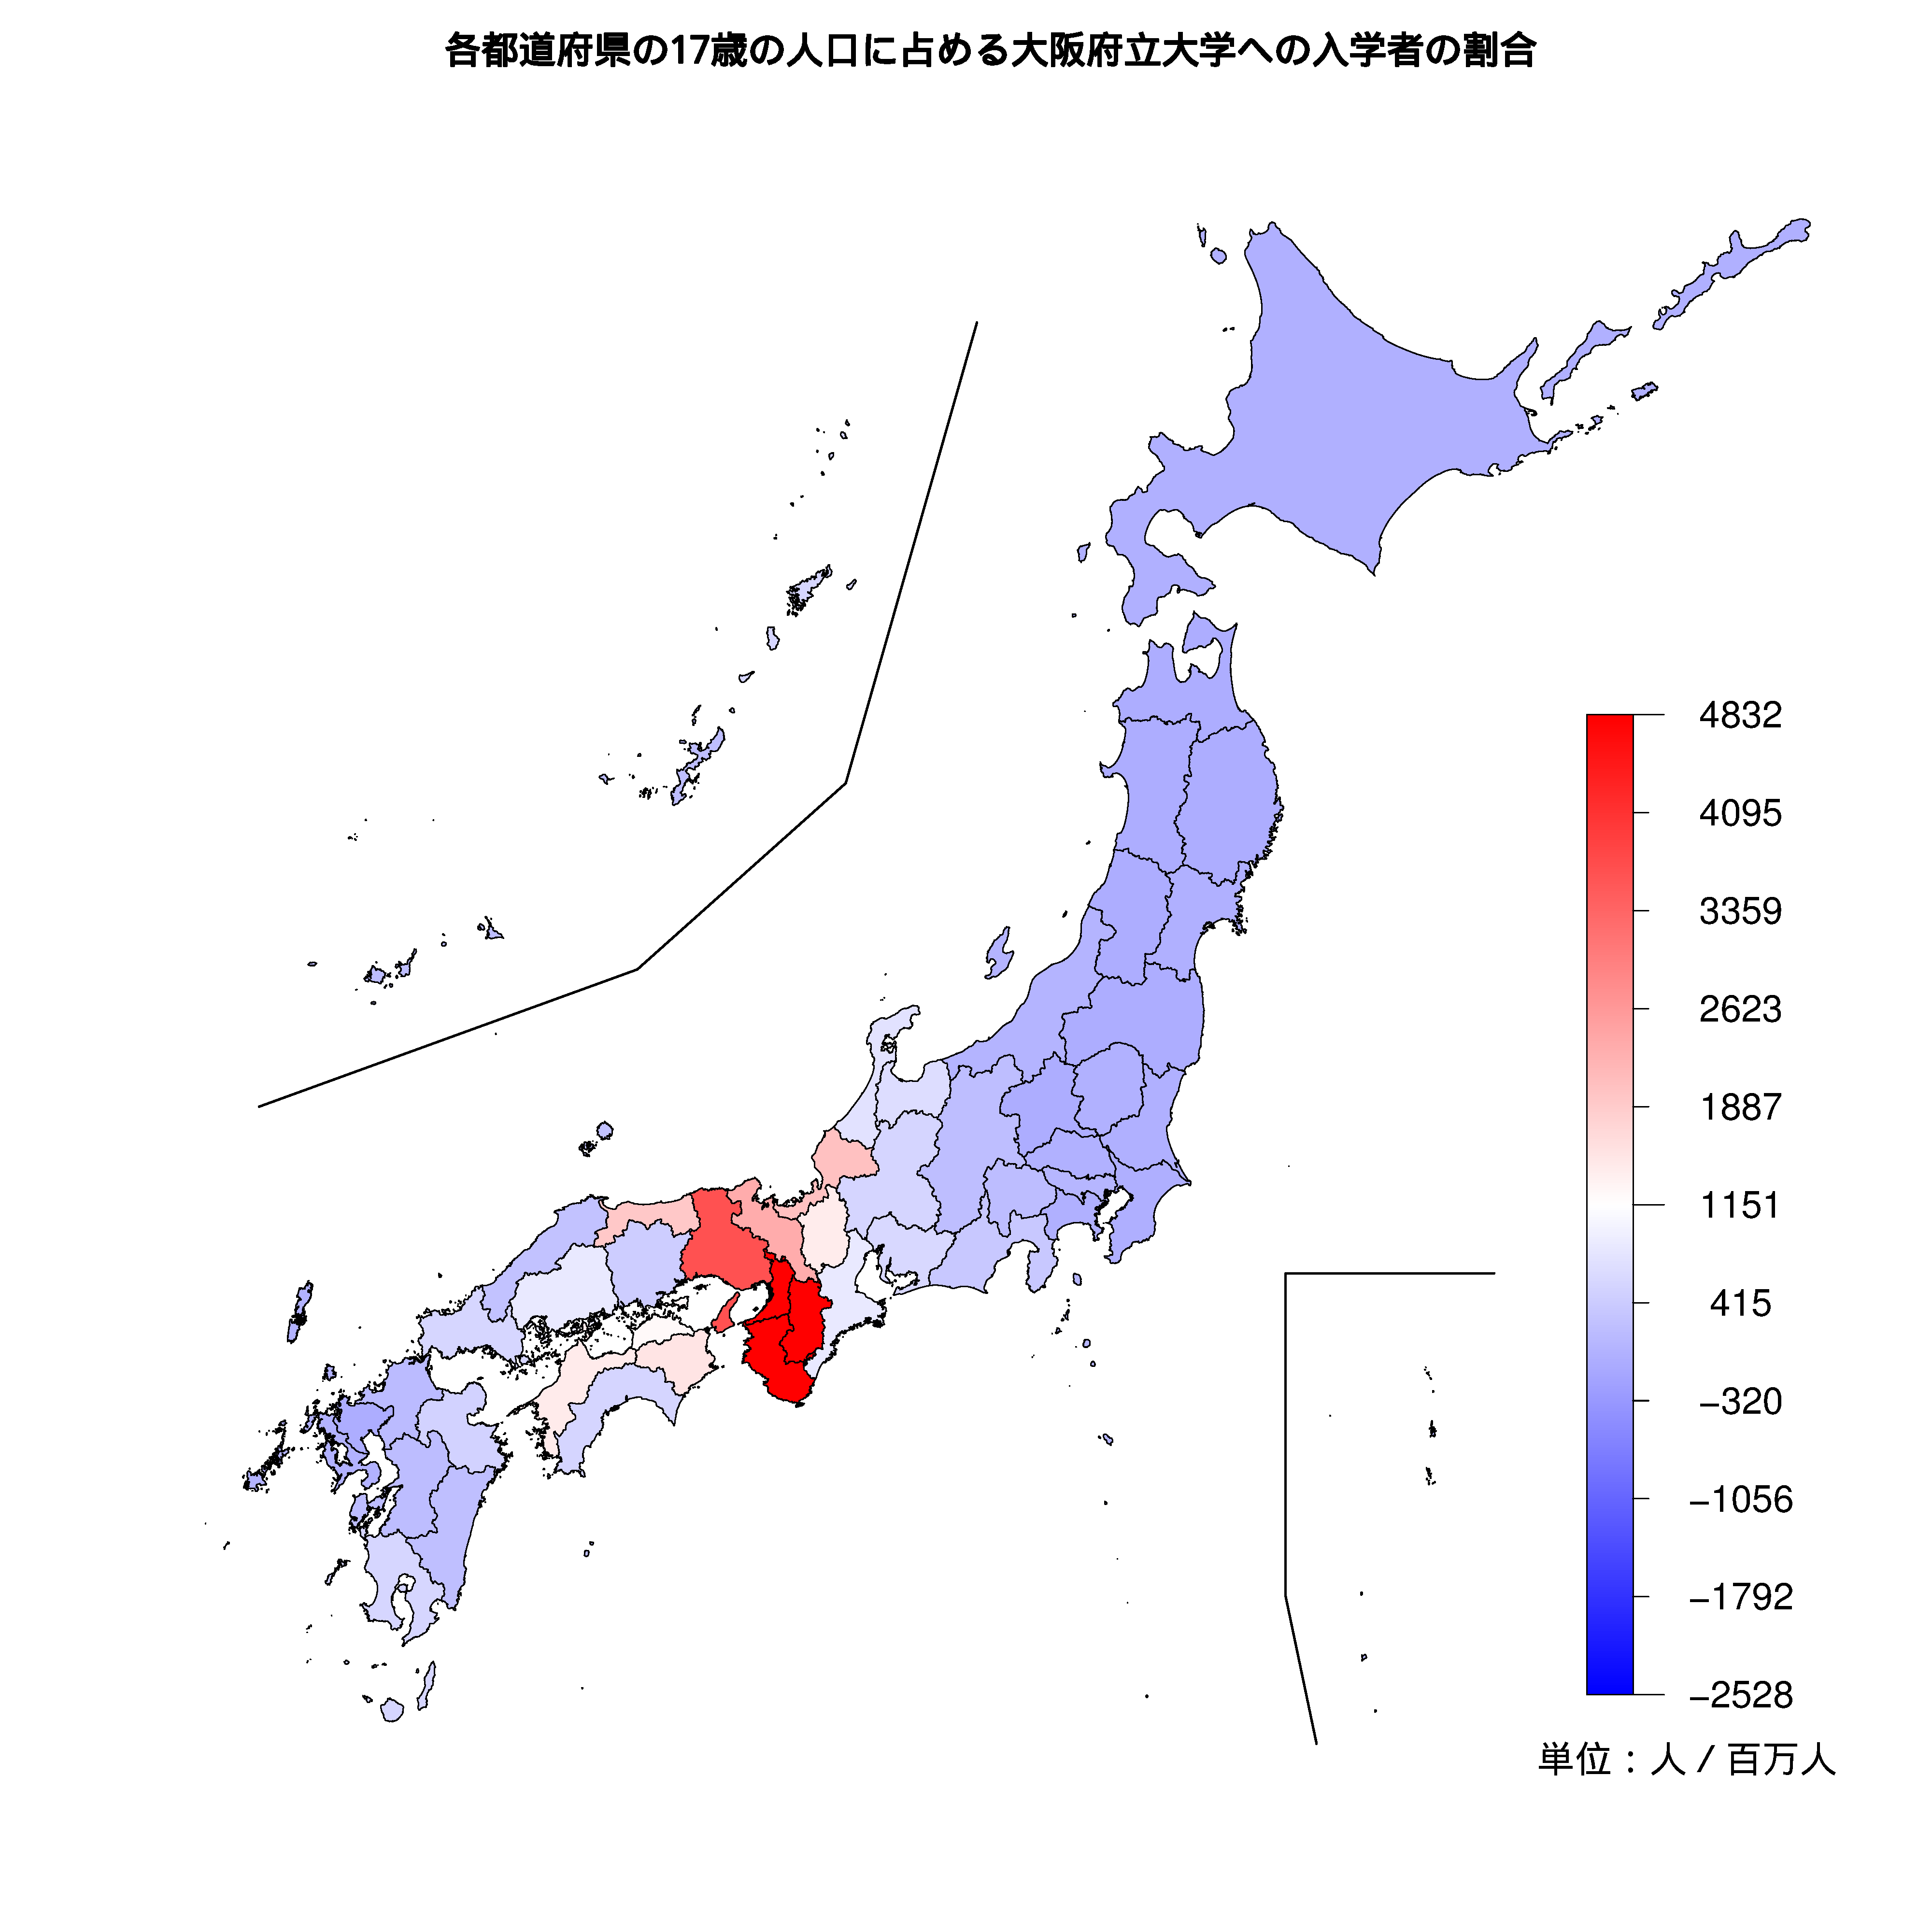 大阪府立大学への入学者が多い都道府県の色分け地図